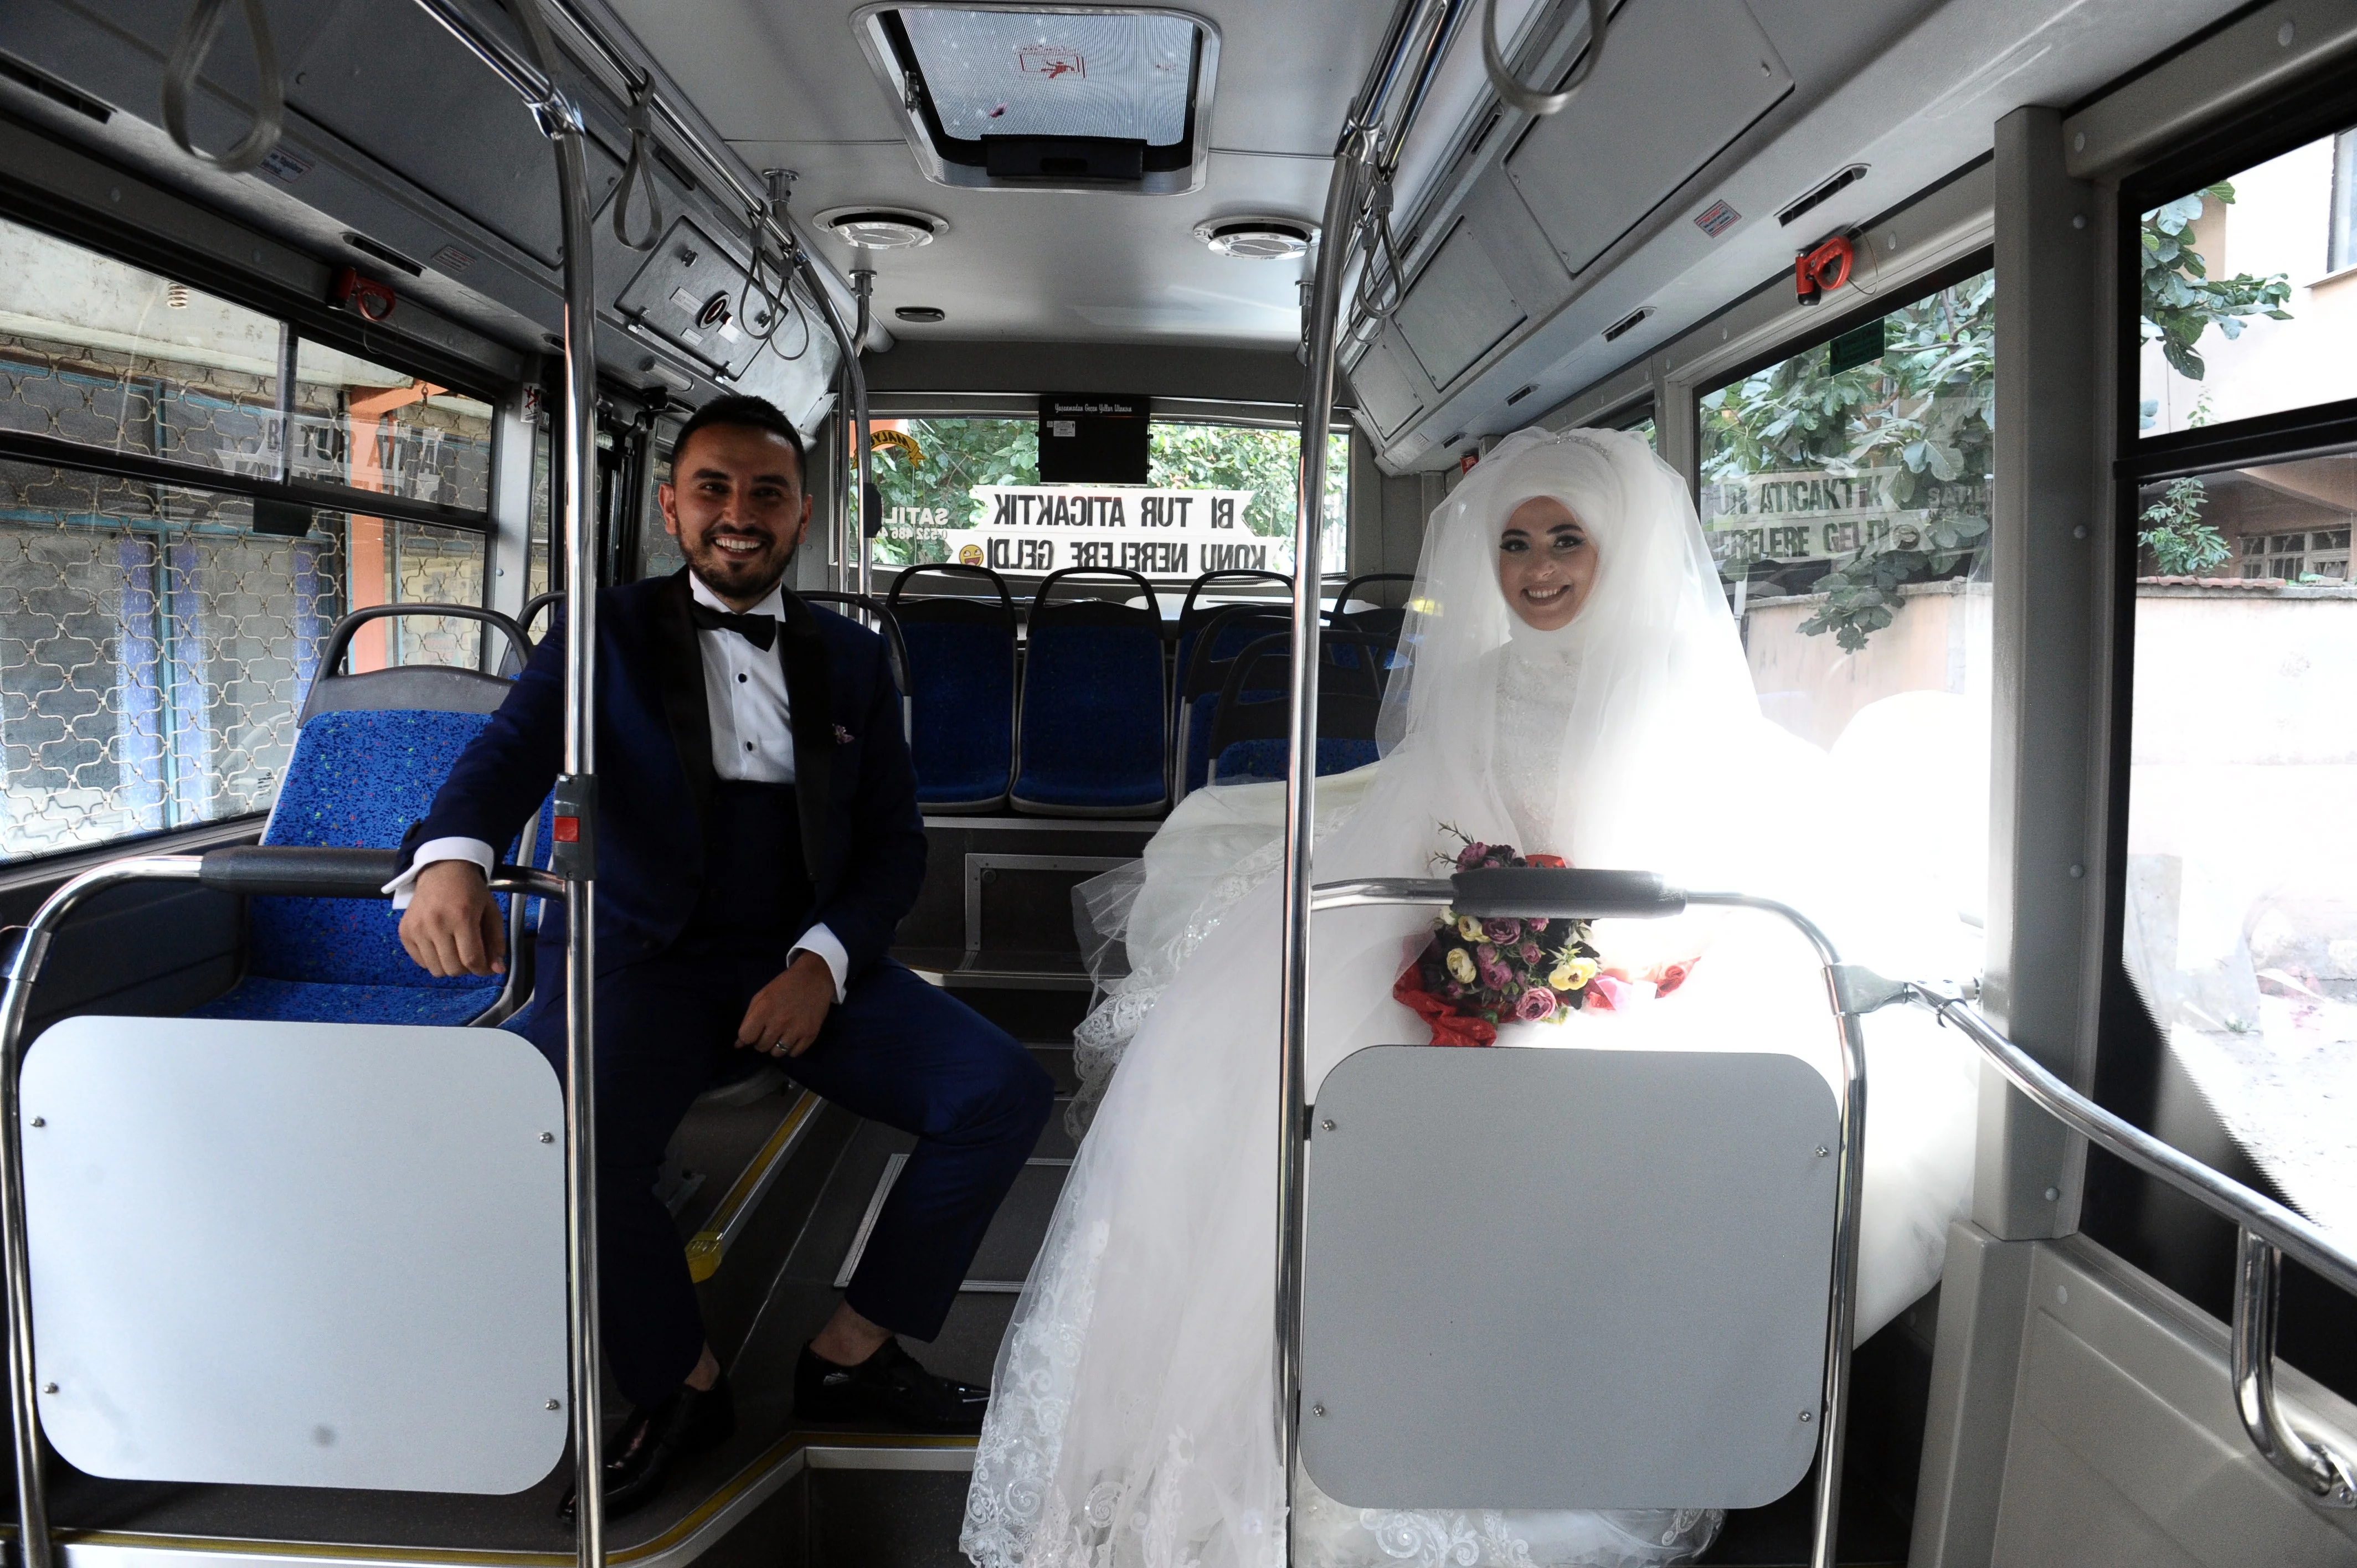 Böyle olur otobüs şoförünün düğünü